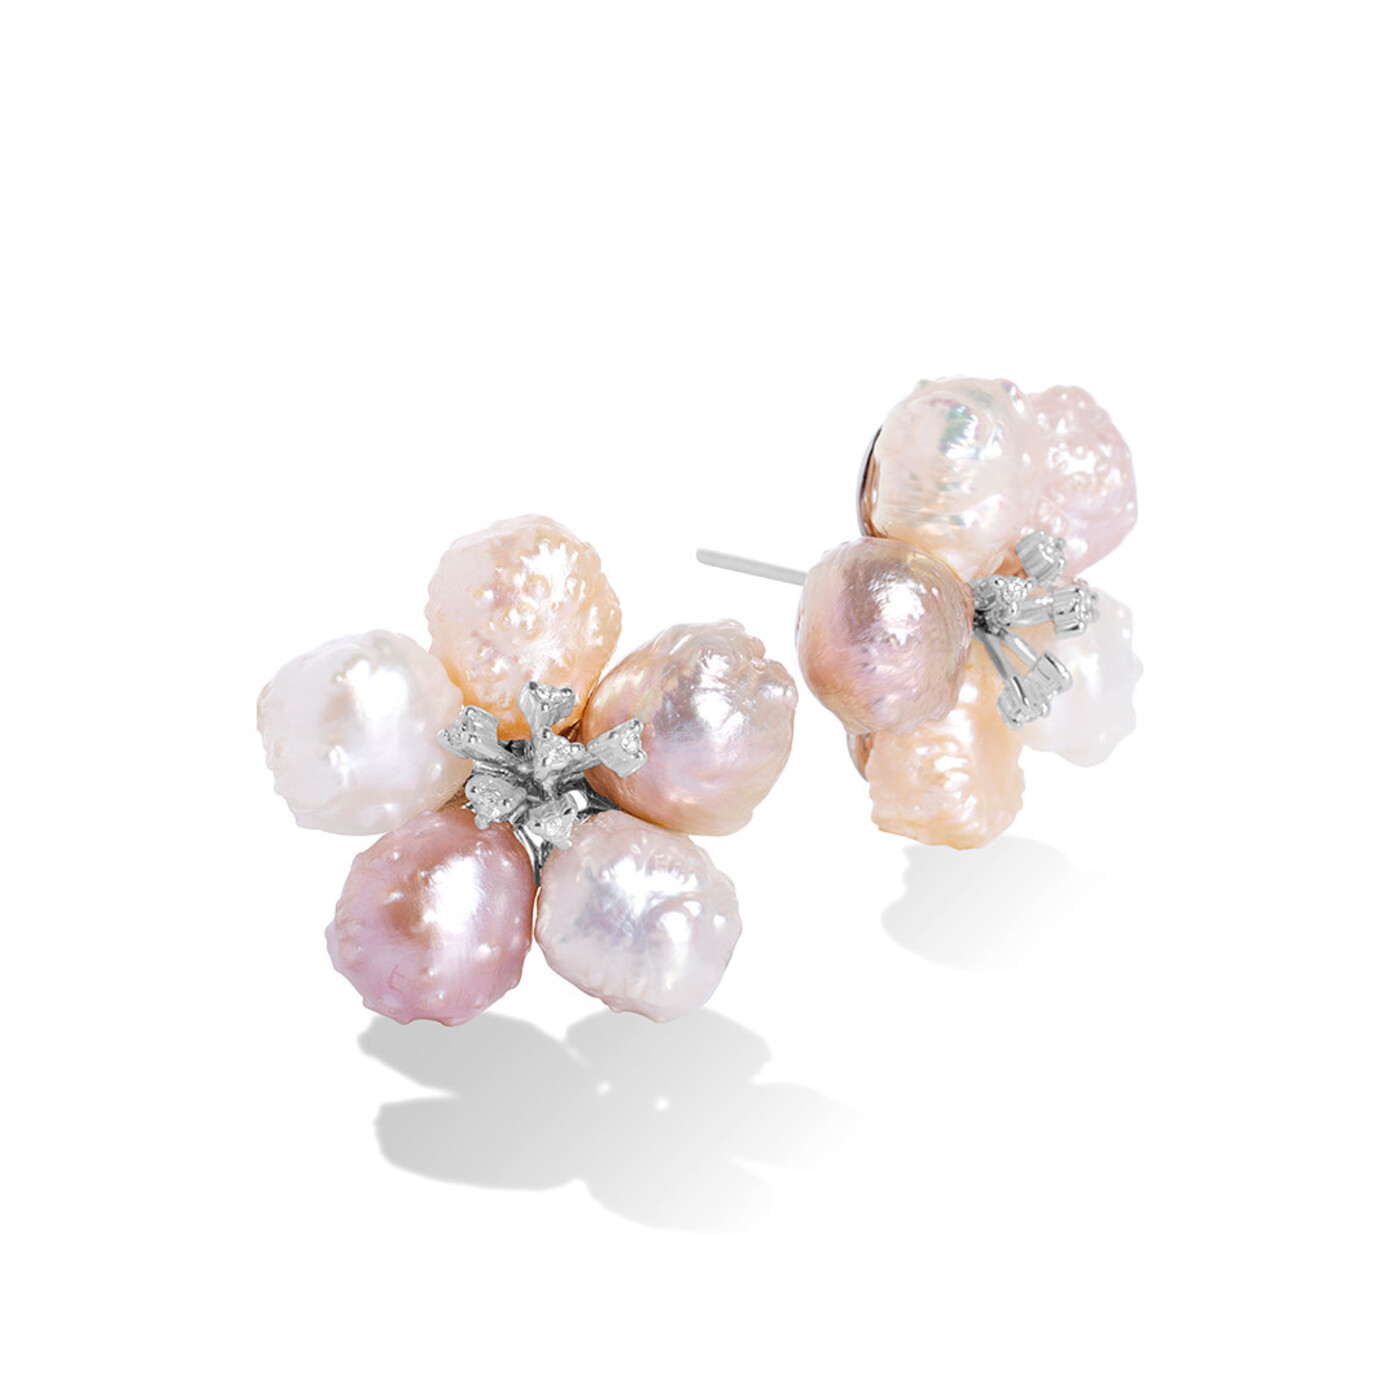 Handcrafted Luxury Earrings - Fine Jewelry by Tamsen Z